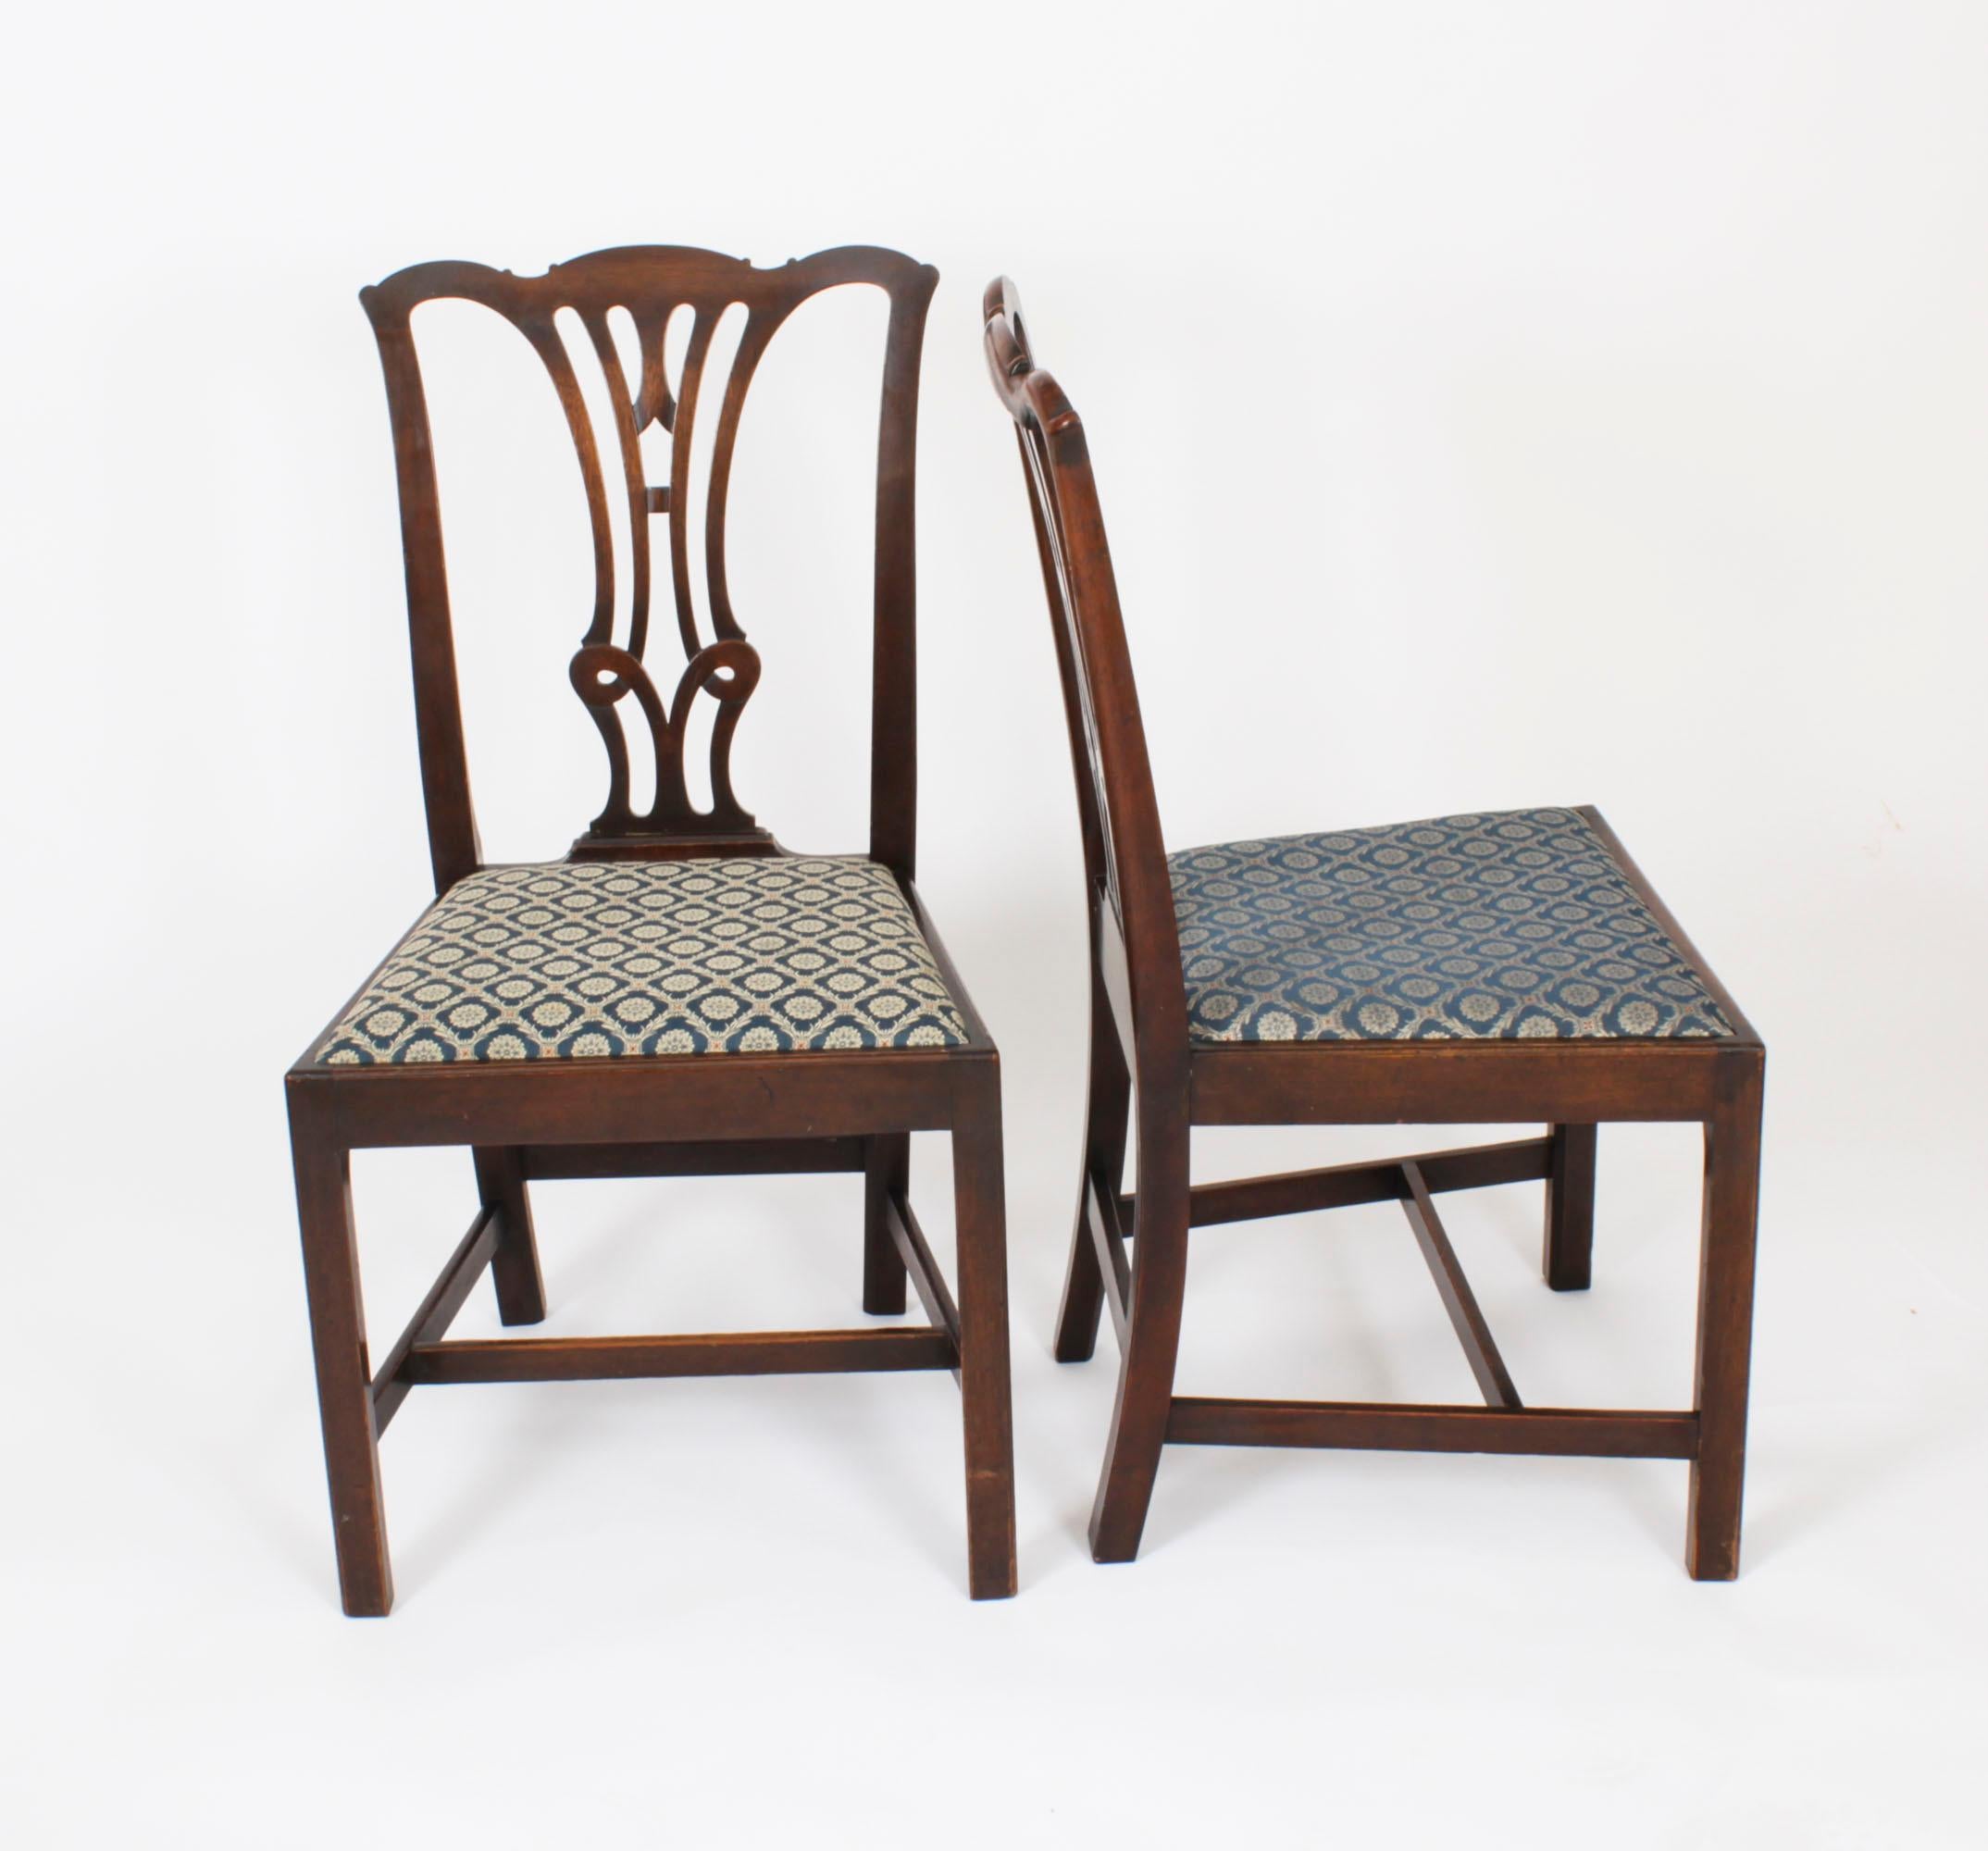 Un magnifique ensemble Harlequin de six chaises de salle à manger Chippendale Revival en acajou massif, datant du milieu du 19e siècle.
 
Elles ont été fabriquées en acajou massif sculpté à la main. Chacune d'entre elles possède un dossier à